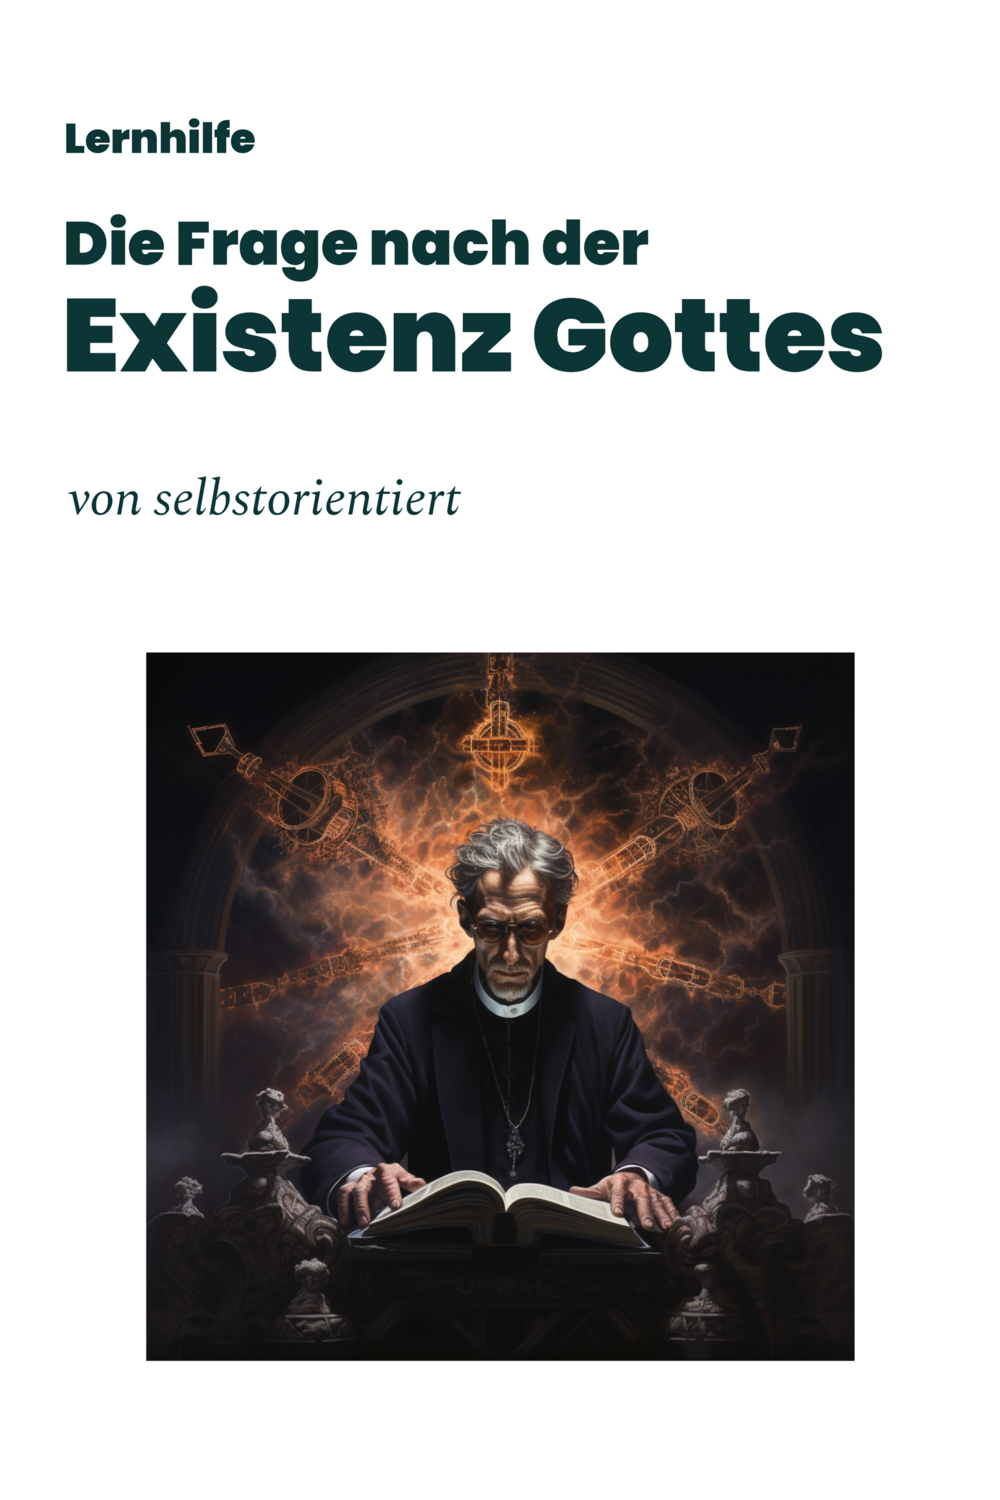 Schülerbuch: Die Frage nach der Existenz Gottes (Texte | Aufgaben)